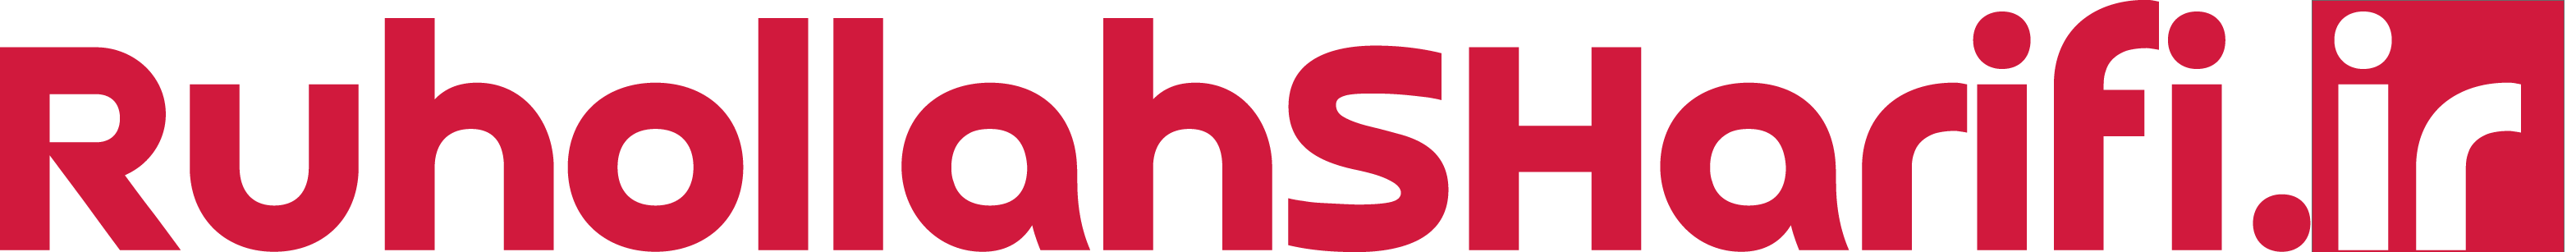 لوگو - logo